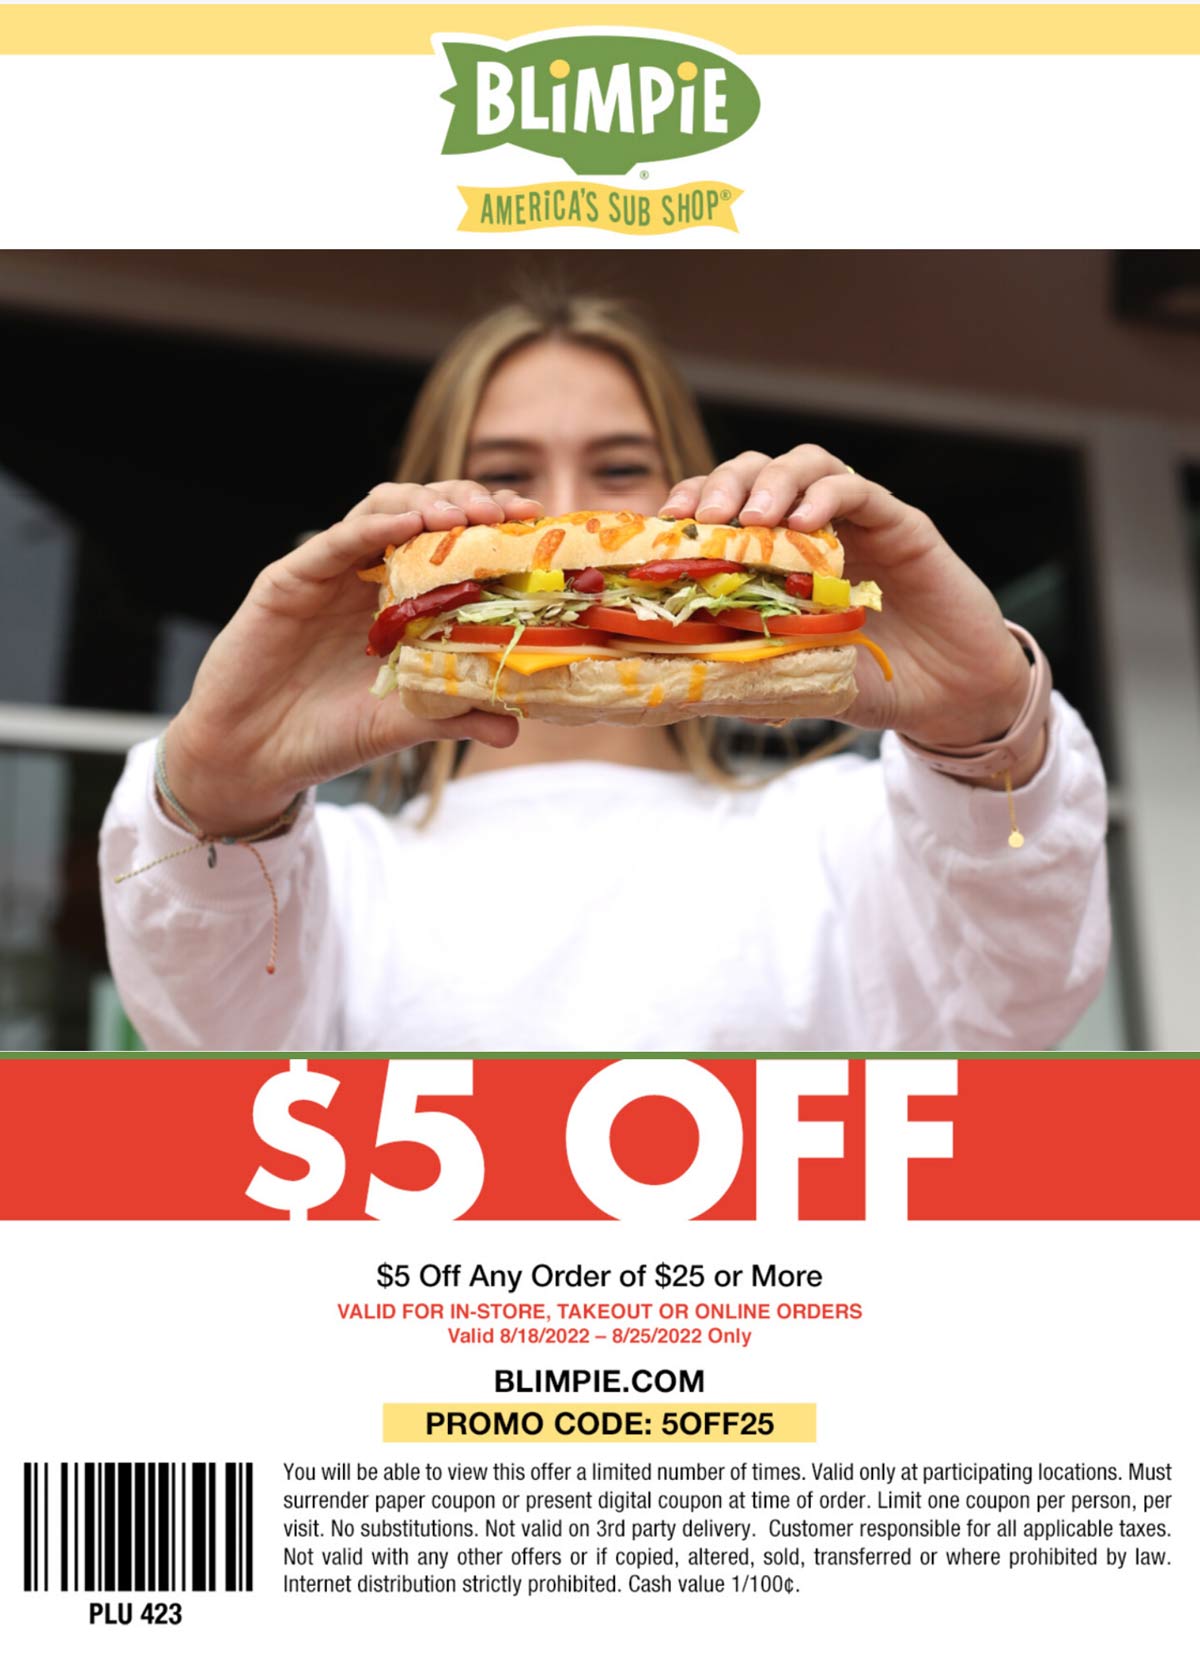 Blimpie restaurants Coupon  $5 off $25 at Blimpie restaurants via promo code 5OFF25 #blimpie 